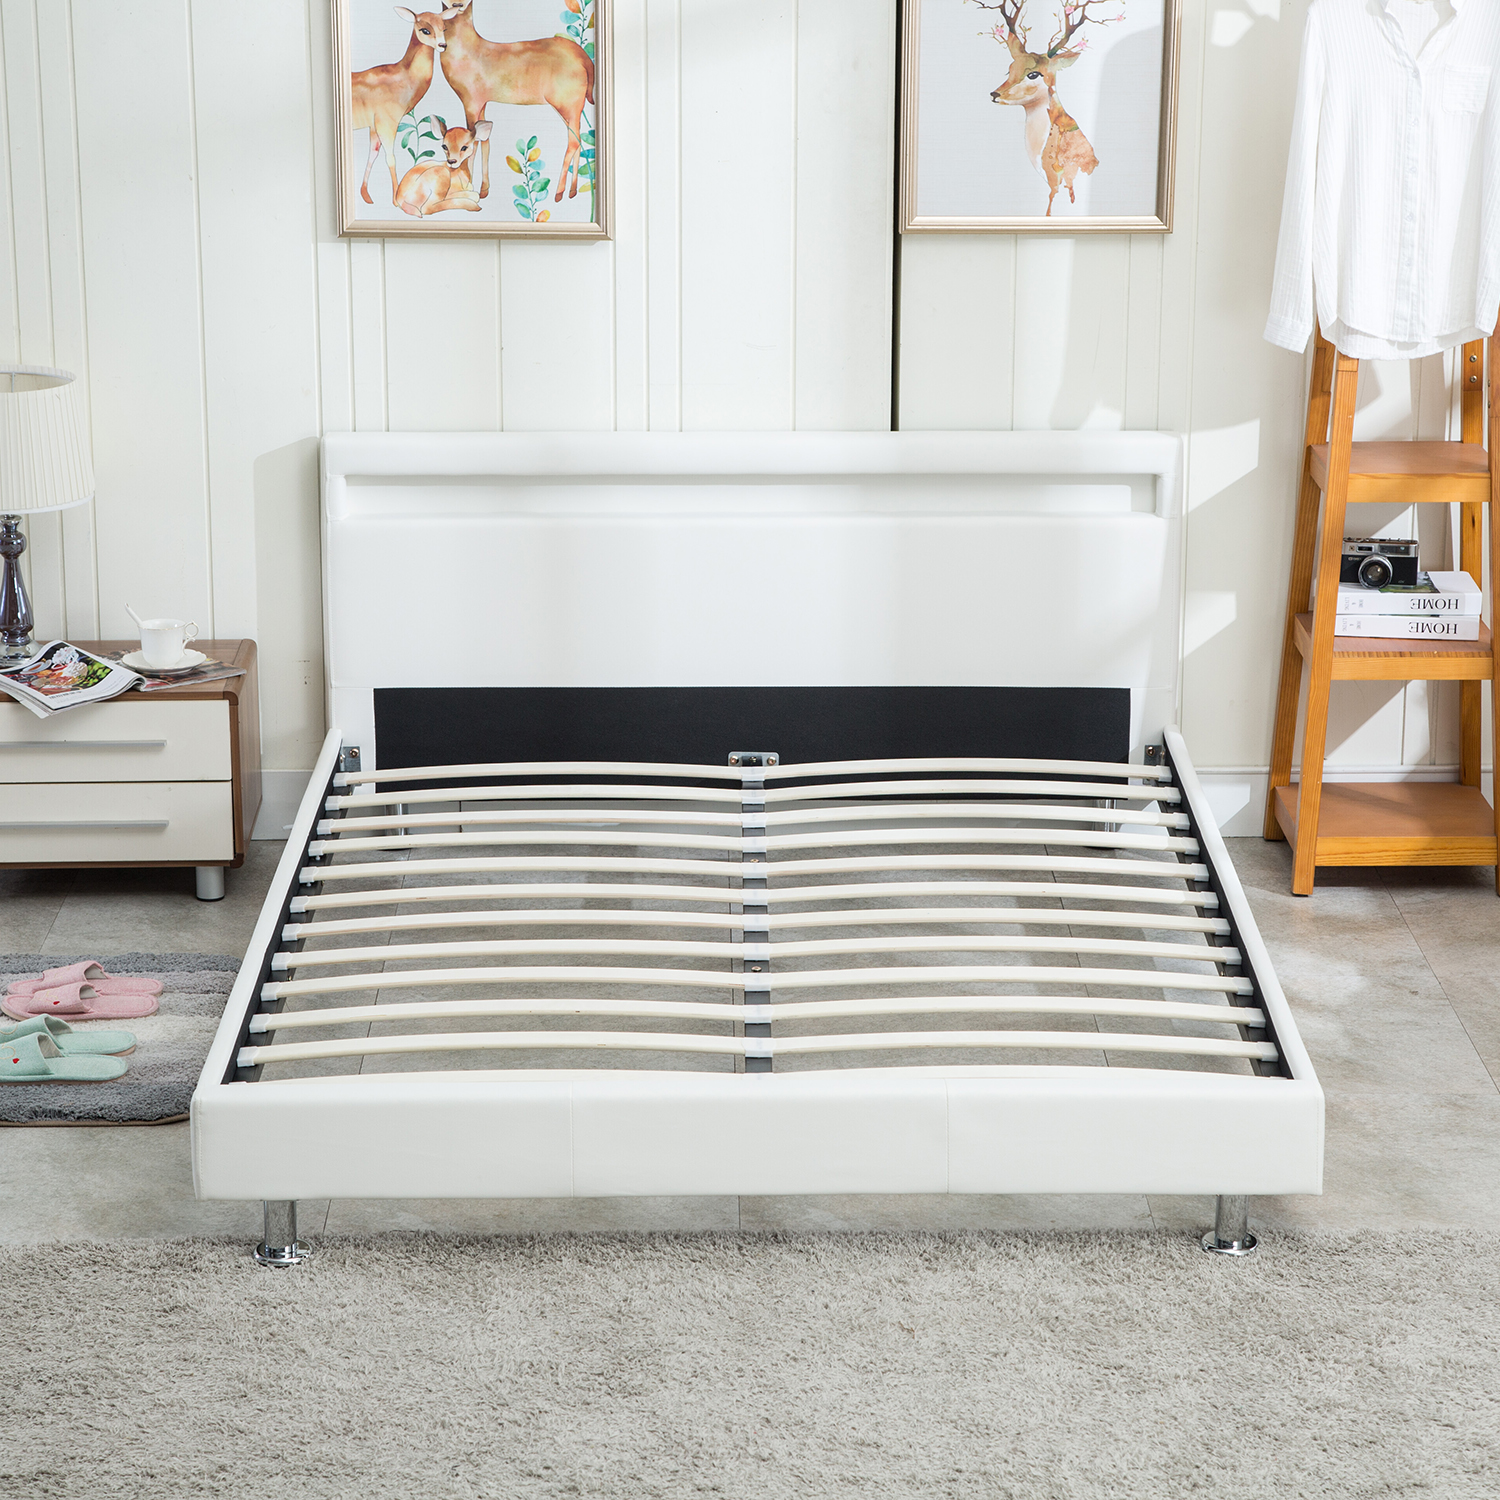 Details About Platform Modern Bedroom Bed Wooden Slat W Led Light Bed Headboard Queen Size